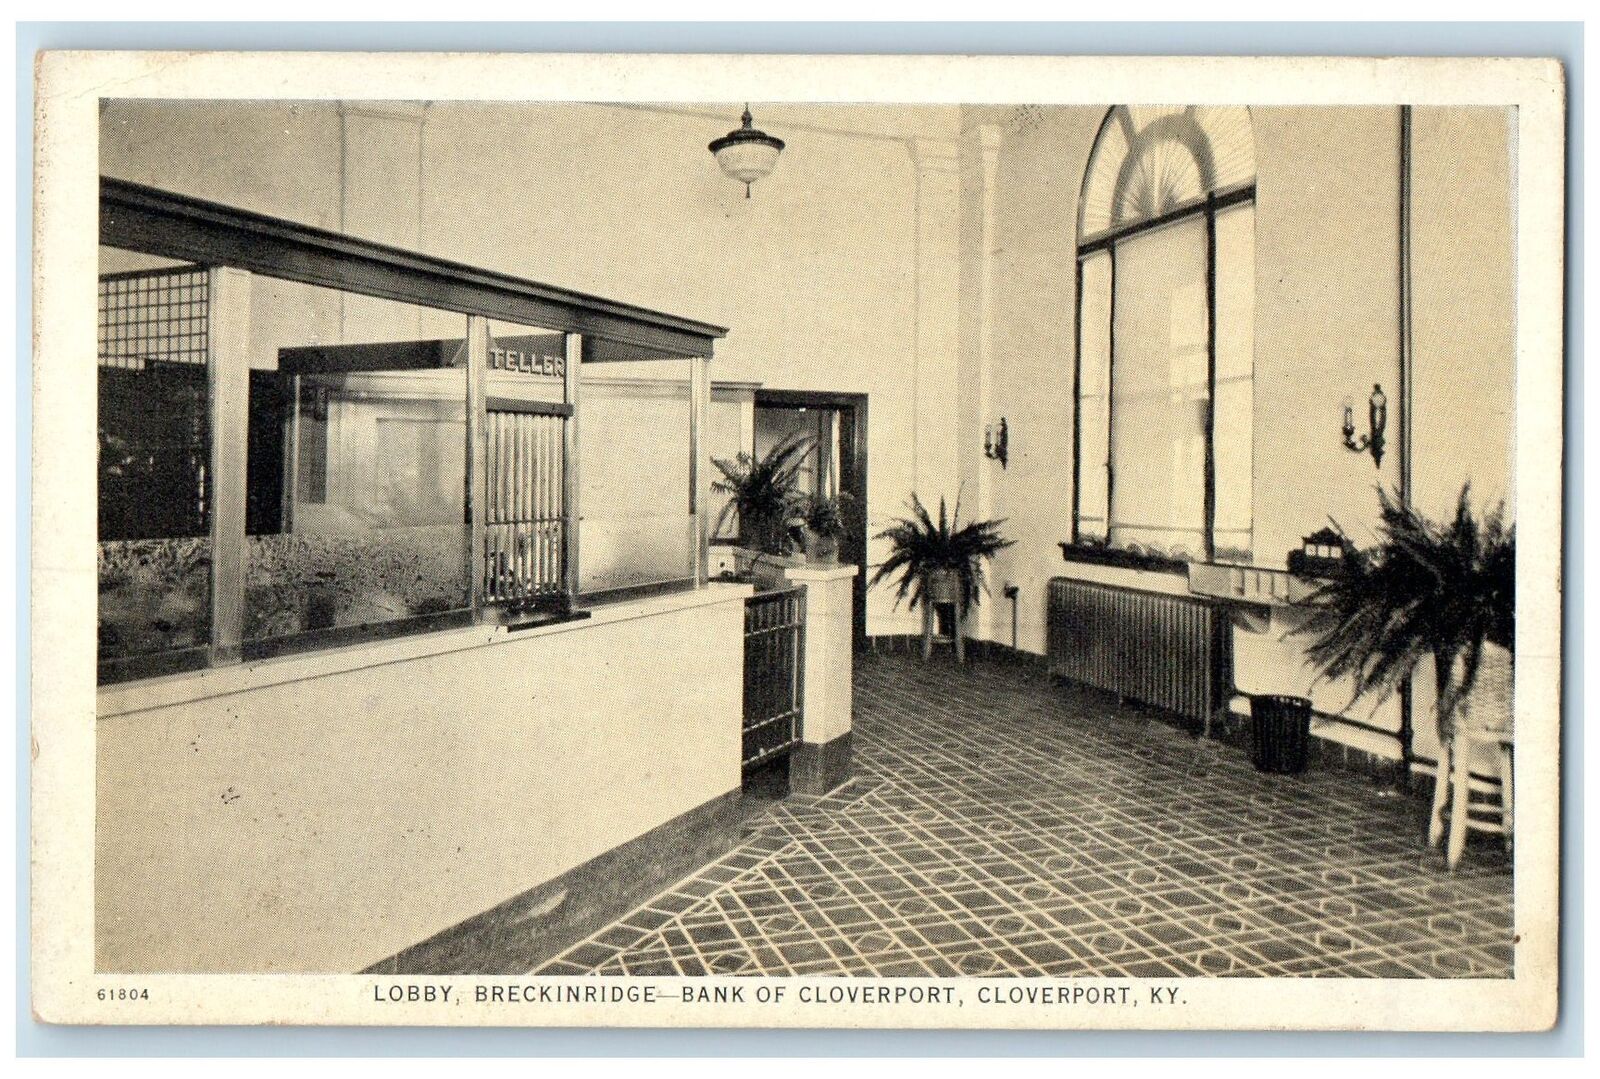 1944 Lobby Breckinridge Bank of Cloverport View Cloverport Kentucky KY Postcard